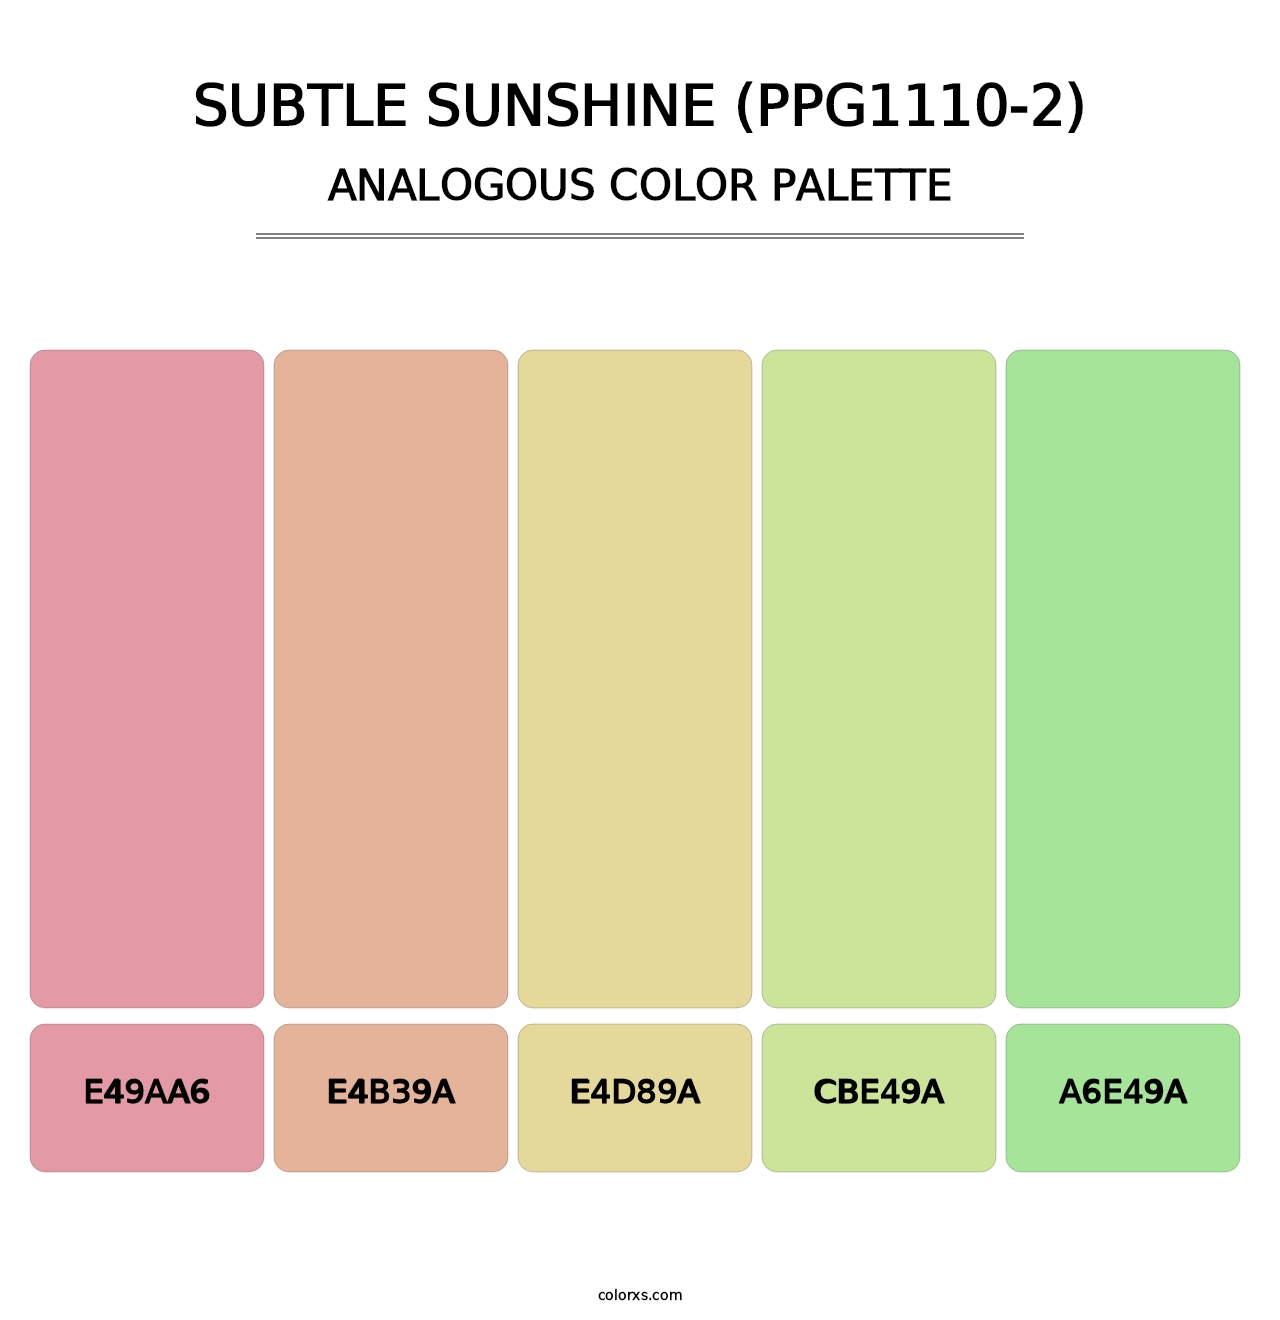 Subtle Sunshine (PPG1110-2) - Analogous Color Palette